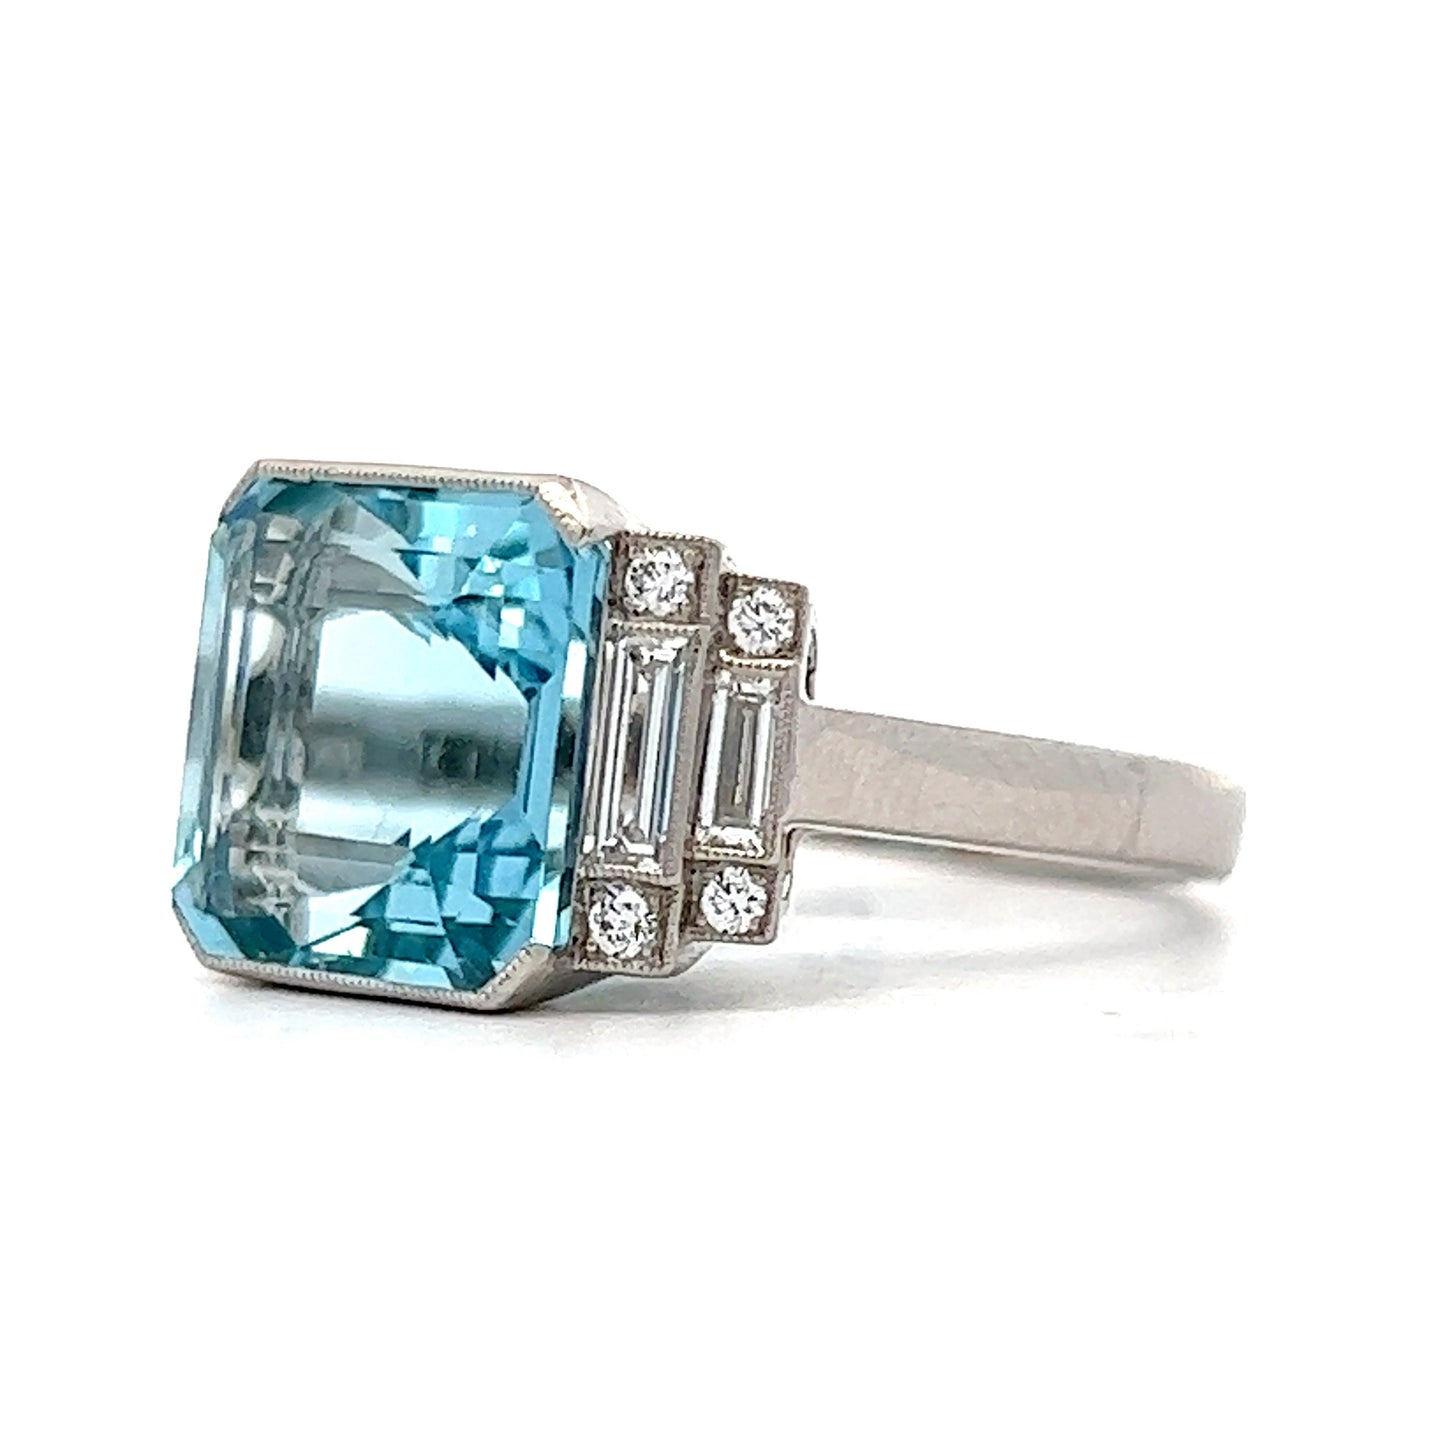 Aquamarine & Diamond Statement Ring in Platinum